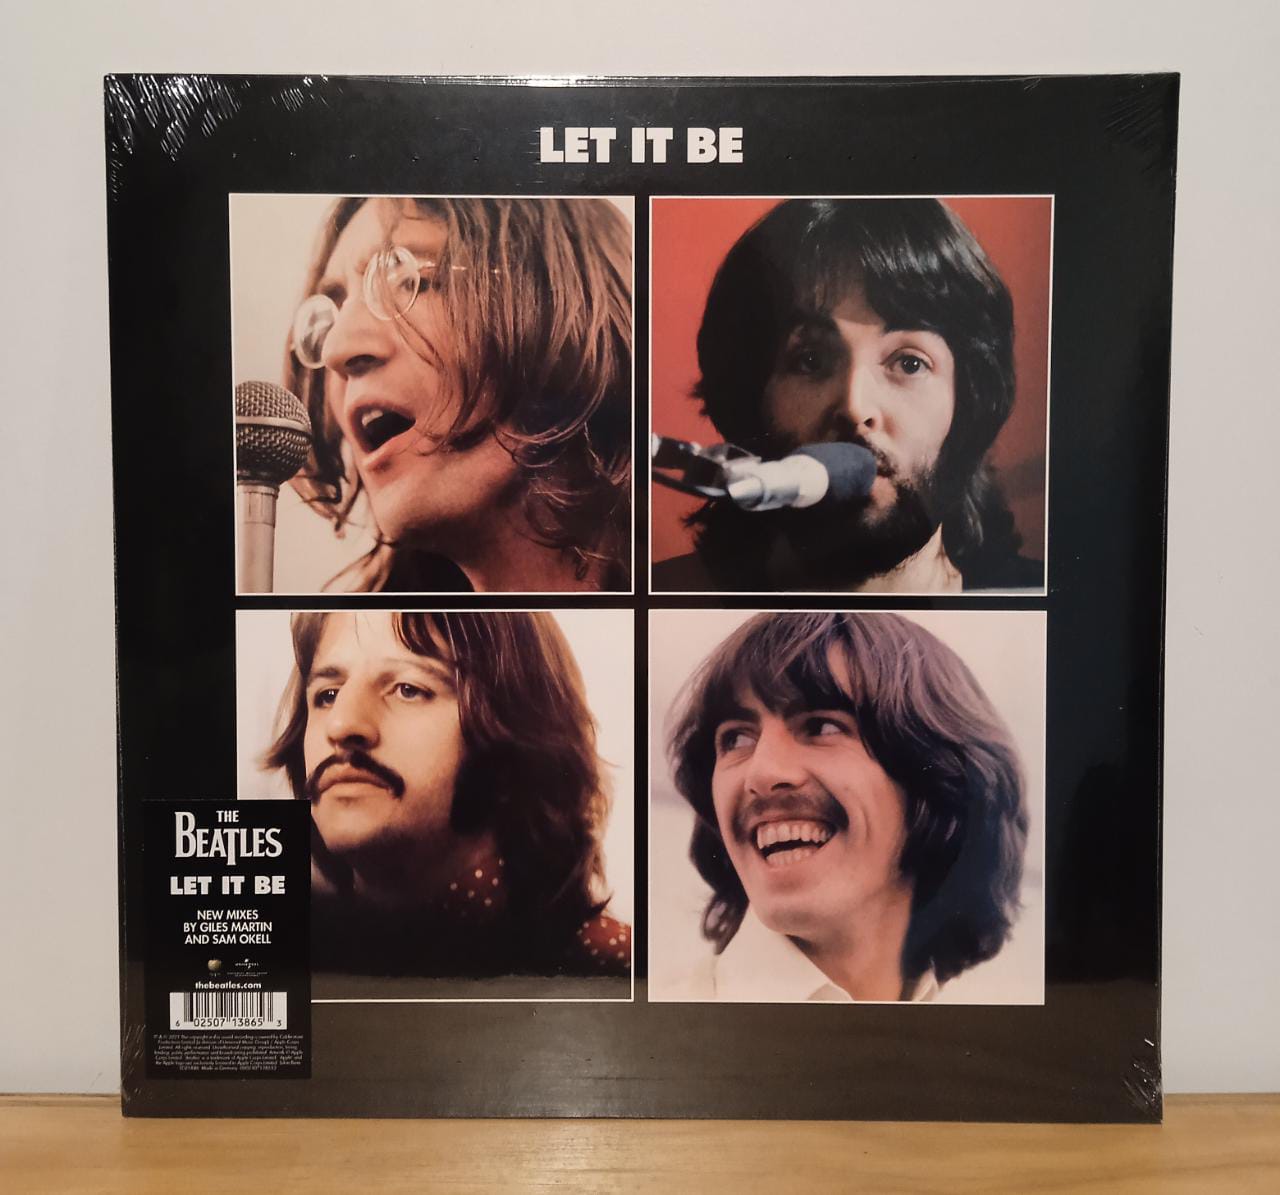 Лет ит би слушать. “Let it be” сингл 1970. The Beatles - Let it be. Let it be the Beatles фото. The Beatles Let it be Tracklist.